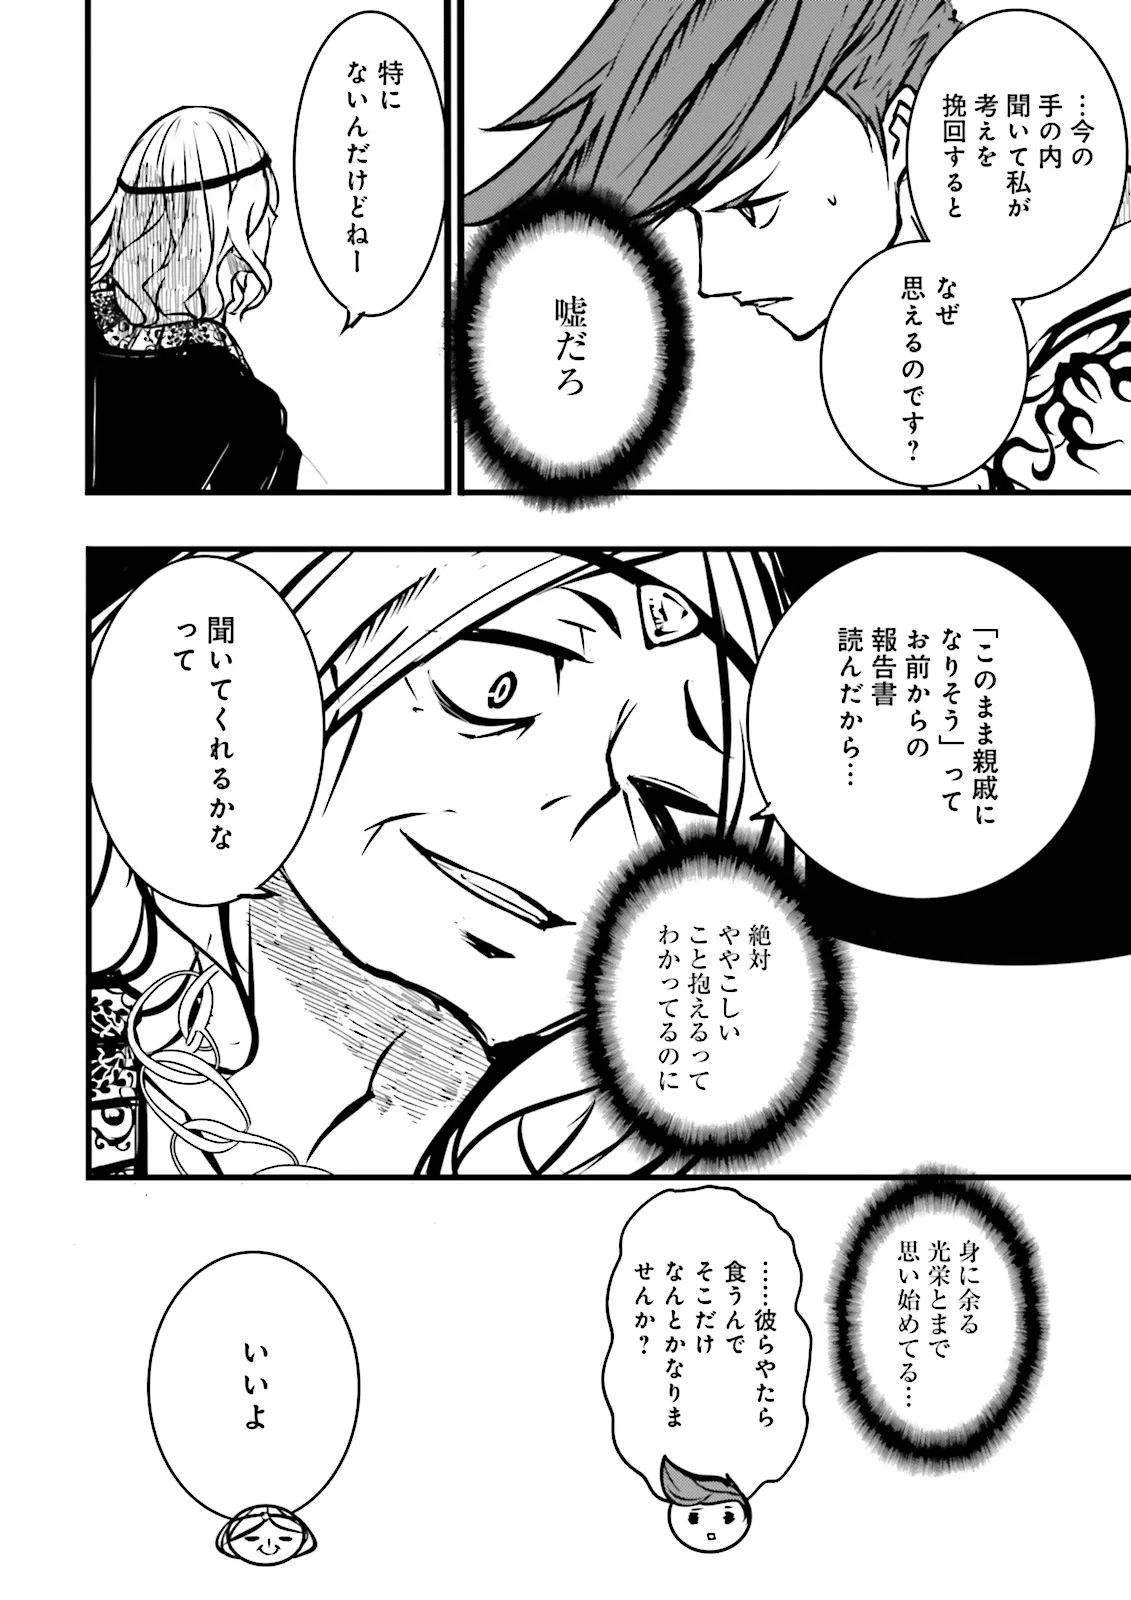 Sukiru Ga Nakereba Level wo Ageru ~ 99 Ga Kansuto No Sekai De Reberu 800 Man Kara Sutato ~ - Chapter 40.4 - Page 6